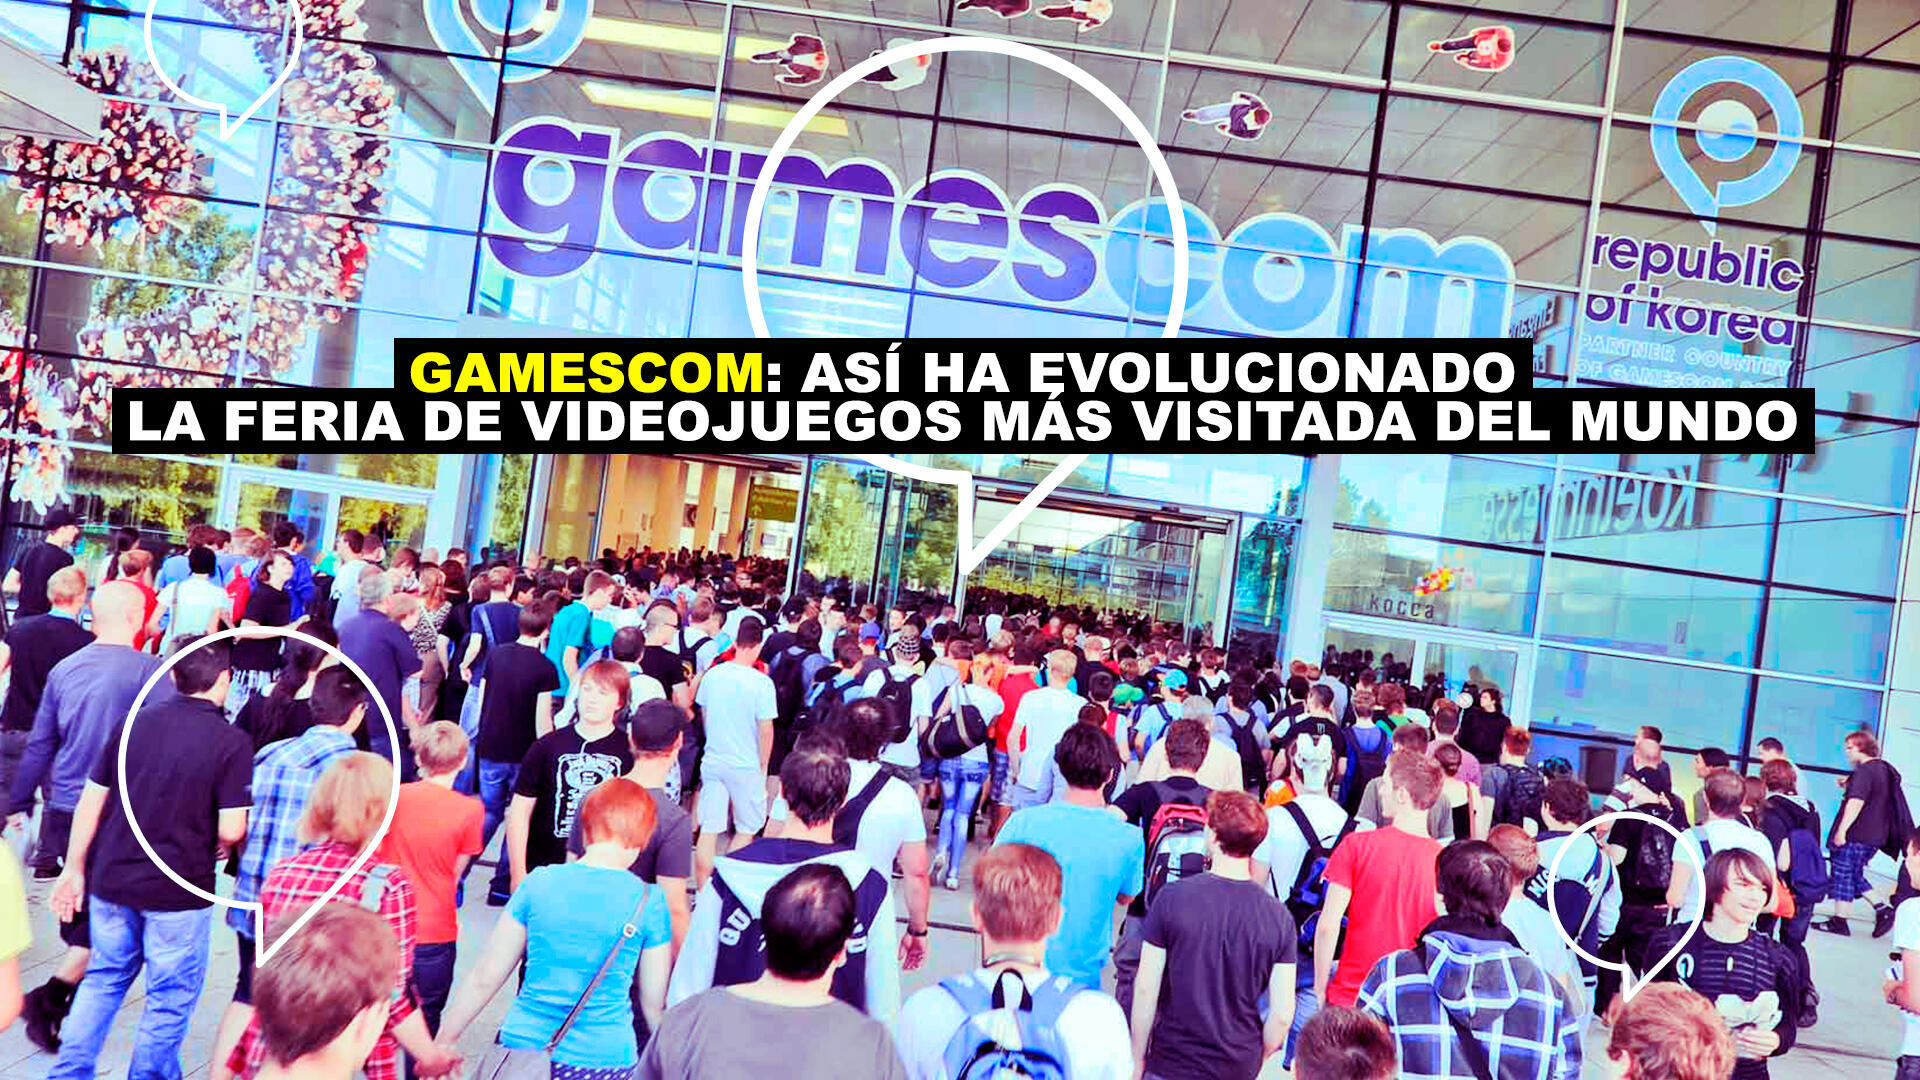 Gamescom: As ha evolucionado la feria de videojuegos ms visitada del mundo